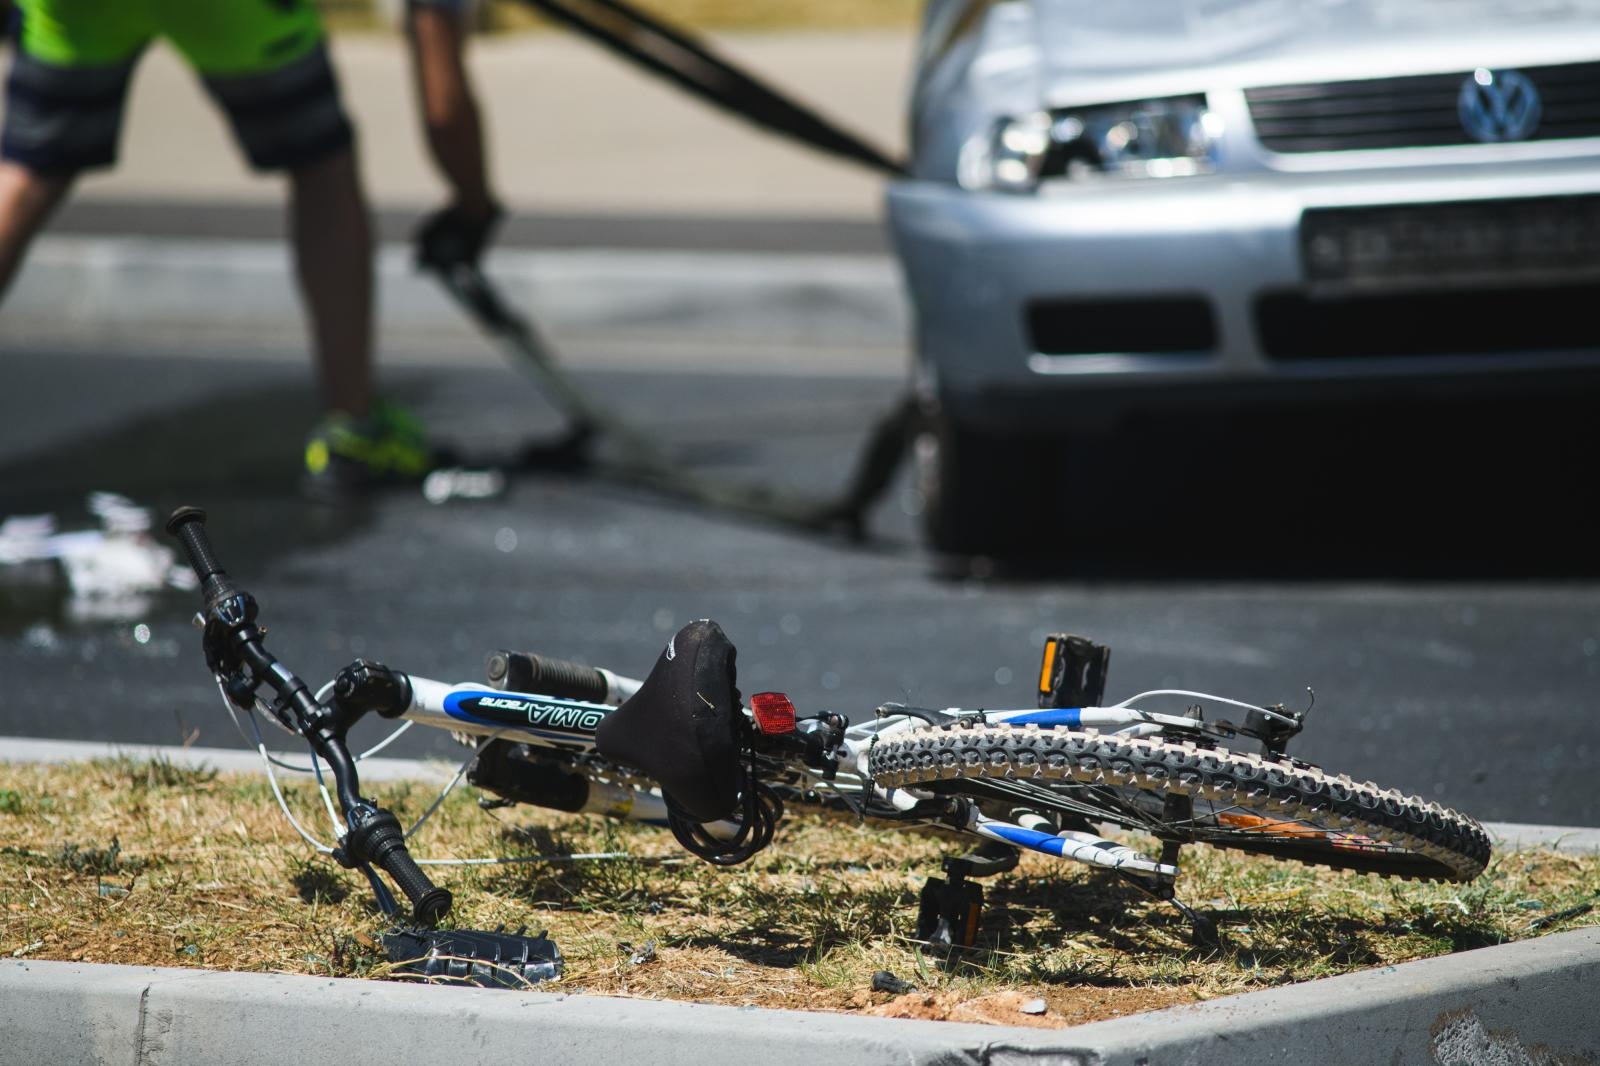 29.06.2019., Zadar  - U subotu oko 11 sati u ulici Ante Starcevica dogodila se prometna nesreca u kojoj je teske ozljede zadobio biciklist koji je hitno prevezen na lijecenje u OB Zadar. Photo: Marko Dimic/PIXSELL